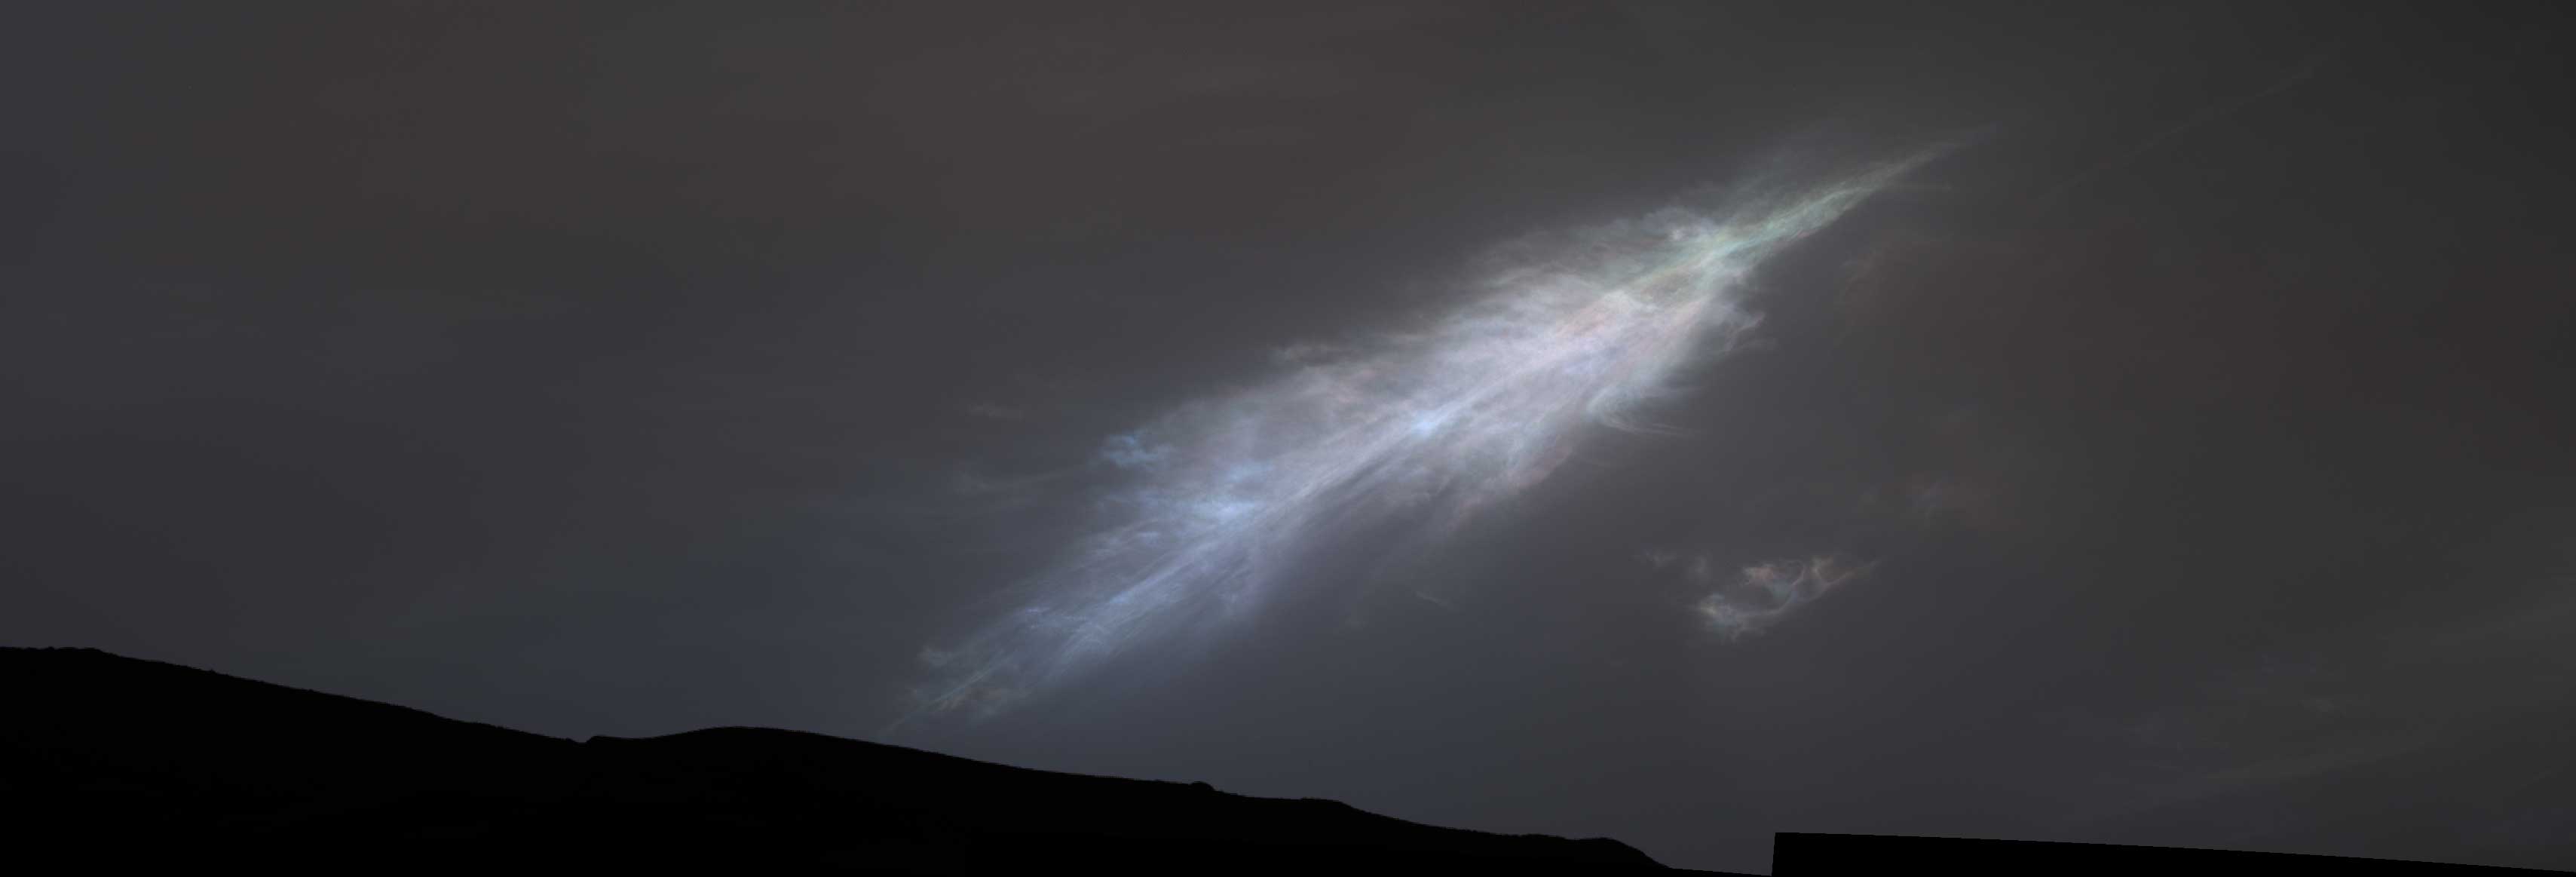 美国宇航局好奇号探测器拍摄的火星上羽毛状云的照片。